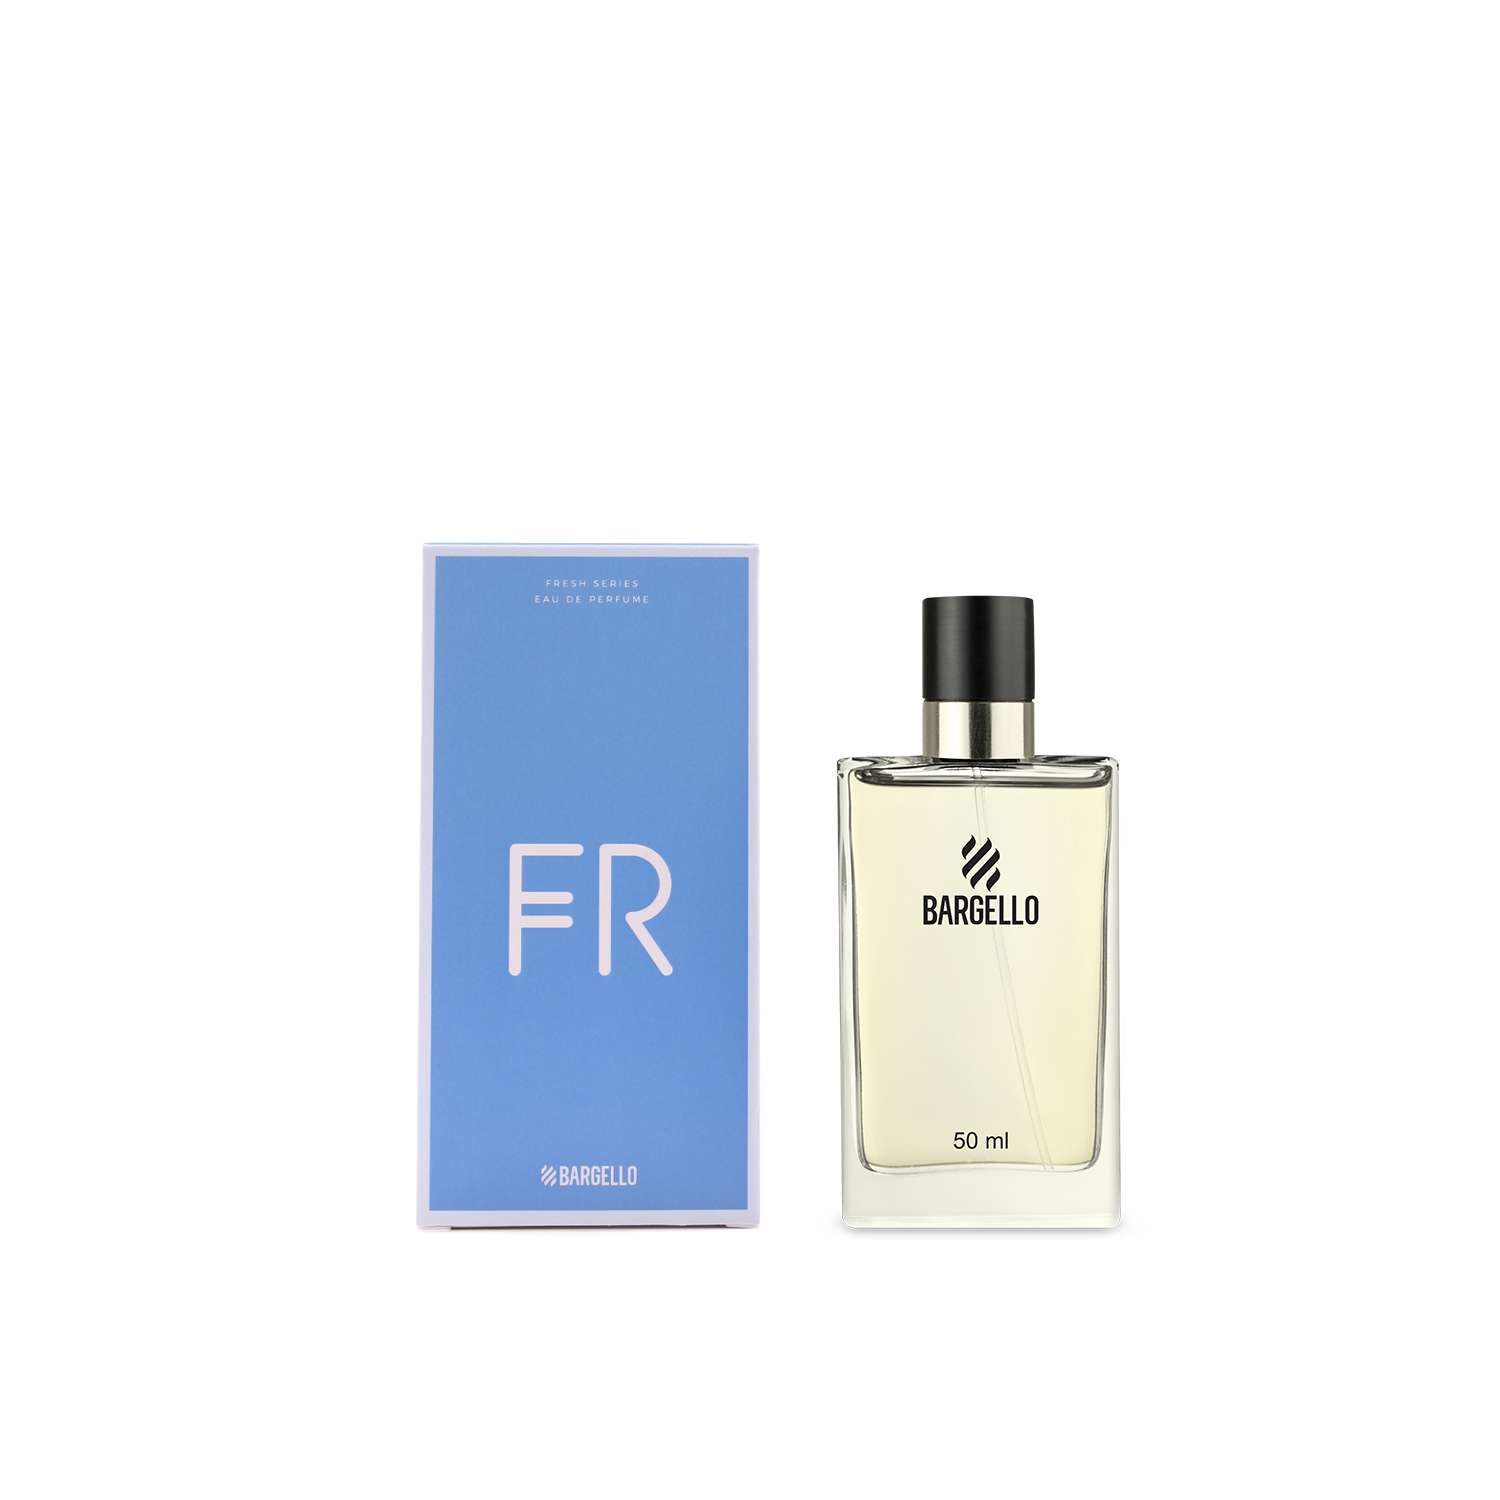 Zich voorstellen dennenboom Eigenaardig Eau de Parfum #451 | Online-Parfümerie Bargello